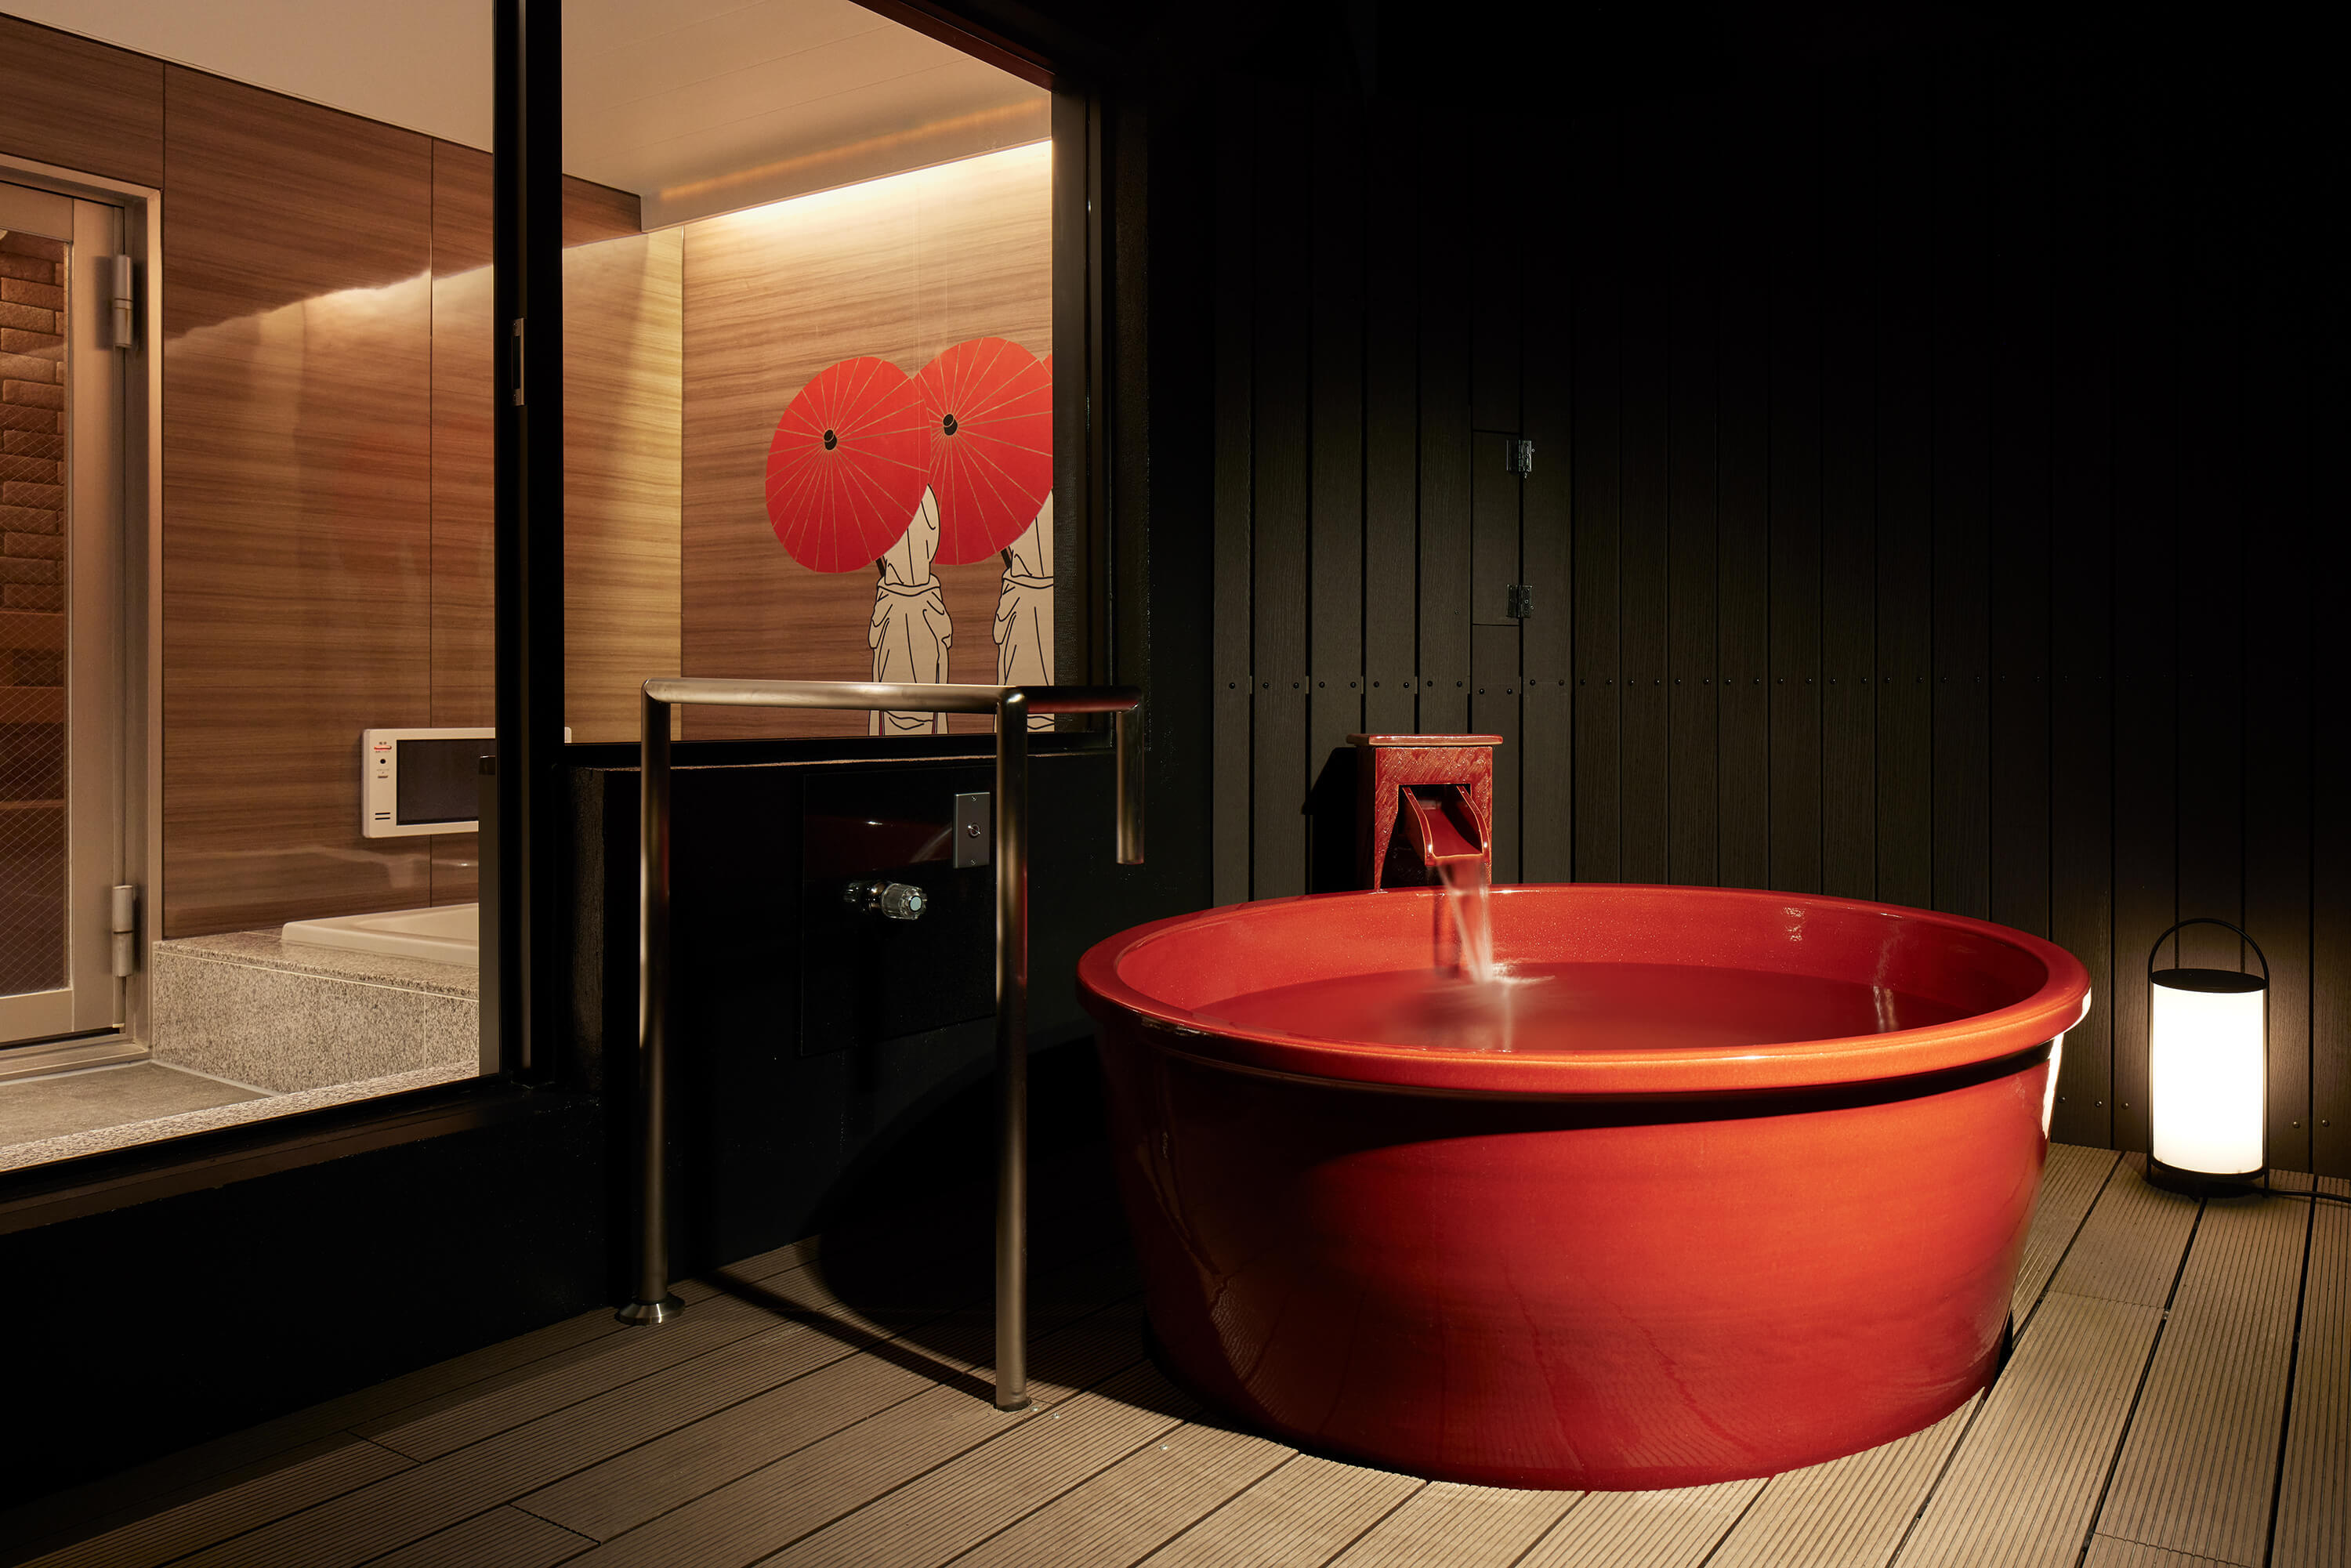 名古屋市内に完全個室の露天風呂・サウナ・岩盤浴付きの
スパリゾート、新たに2部屋を改装し
「名古屋ホテルHOQA花色の湯」としてリニューアルオープン！